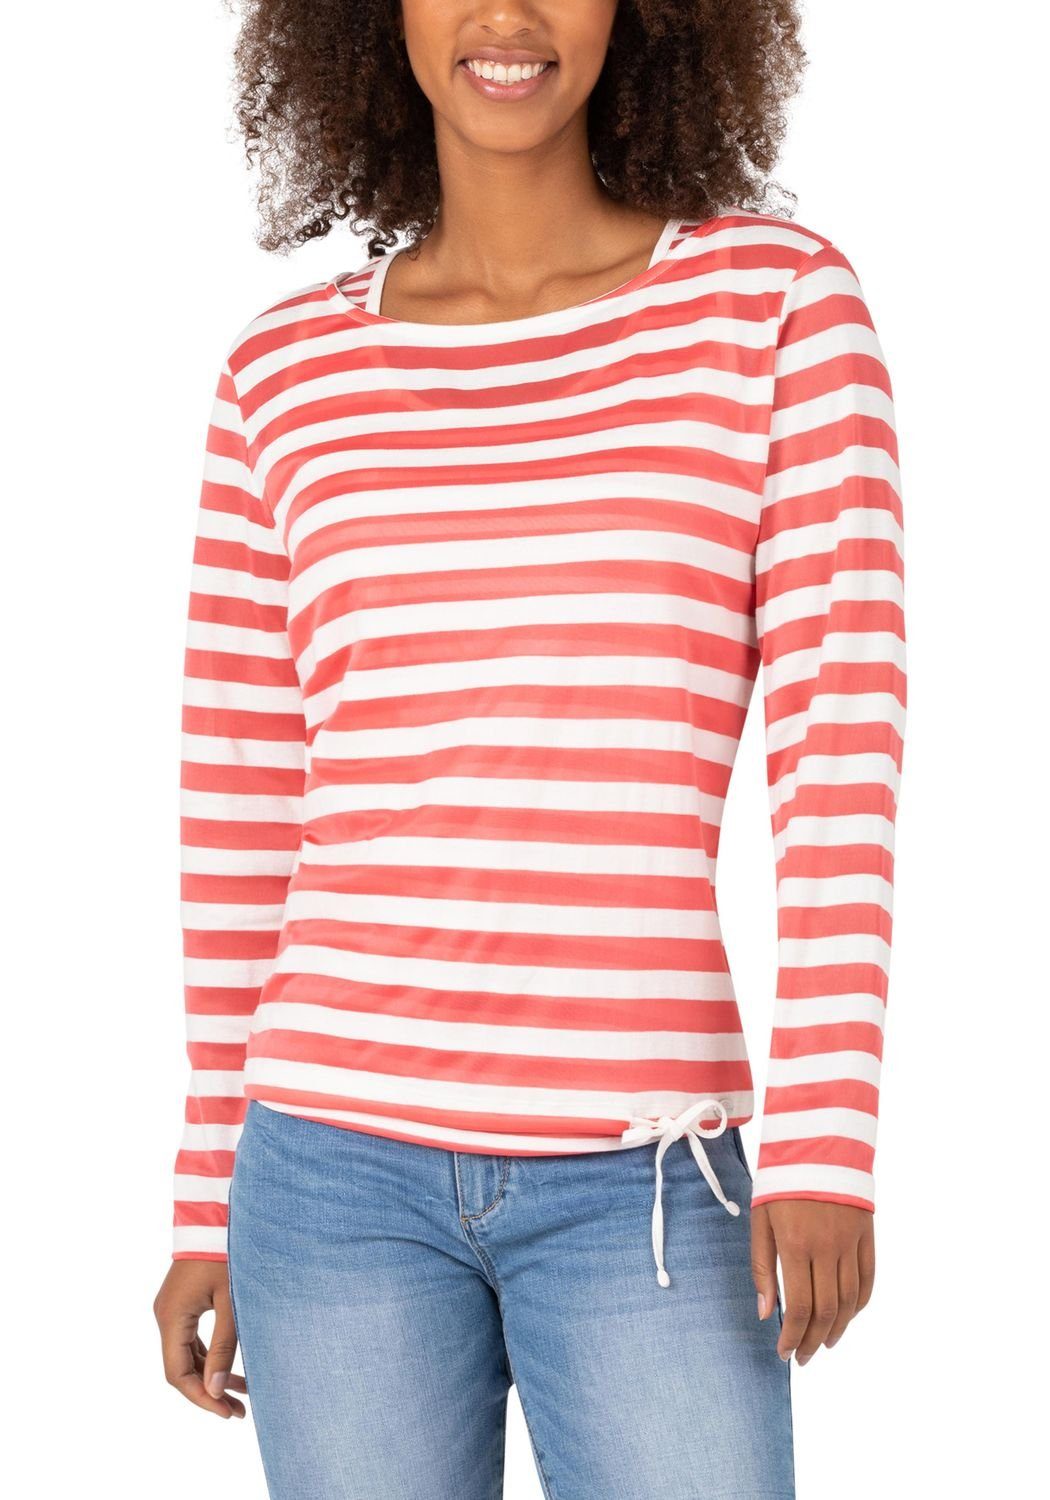 stripes STRIPE Strickpullover TIMEZONE White big aus Pink 5291 Baumwollmix